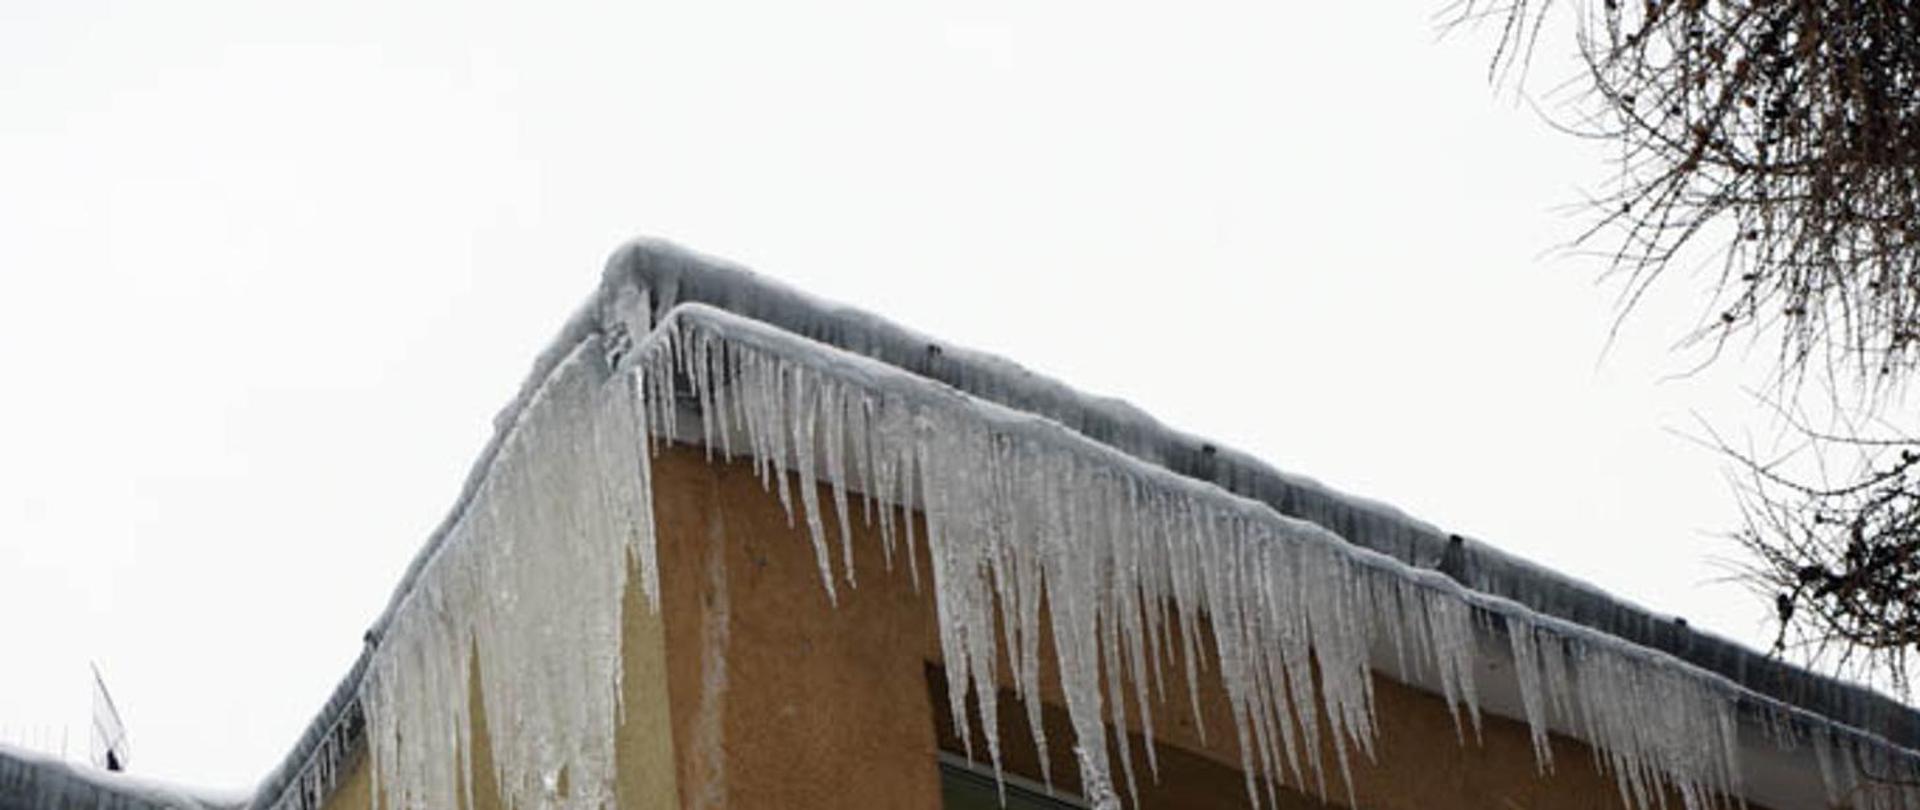 Zdjęcie przedstawia sople lodu zwisające z dachu budynku